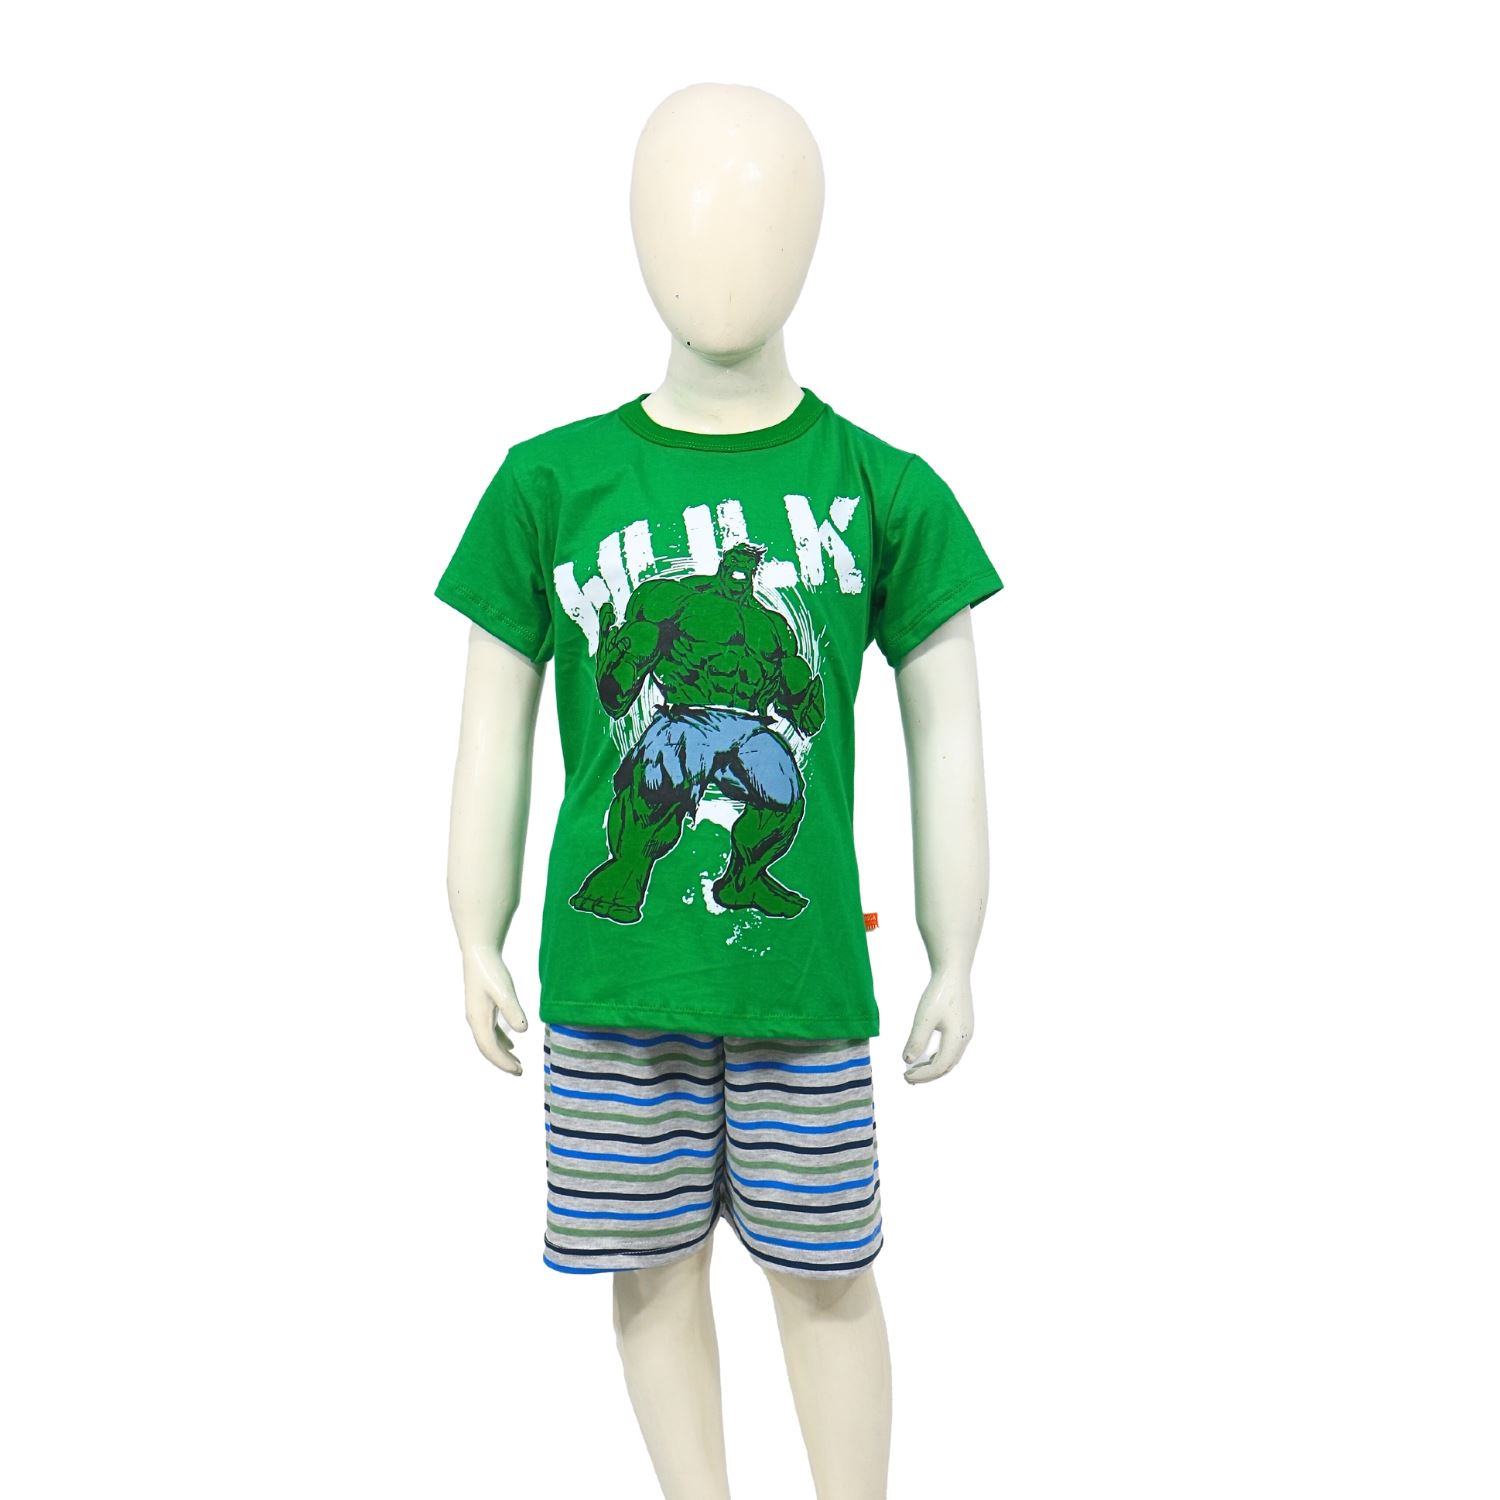 Verde Moda - Niños 4 a 12 Años - Ropa Interior y Pijamas Niños 4 a